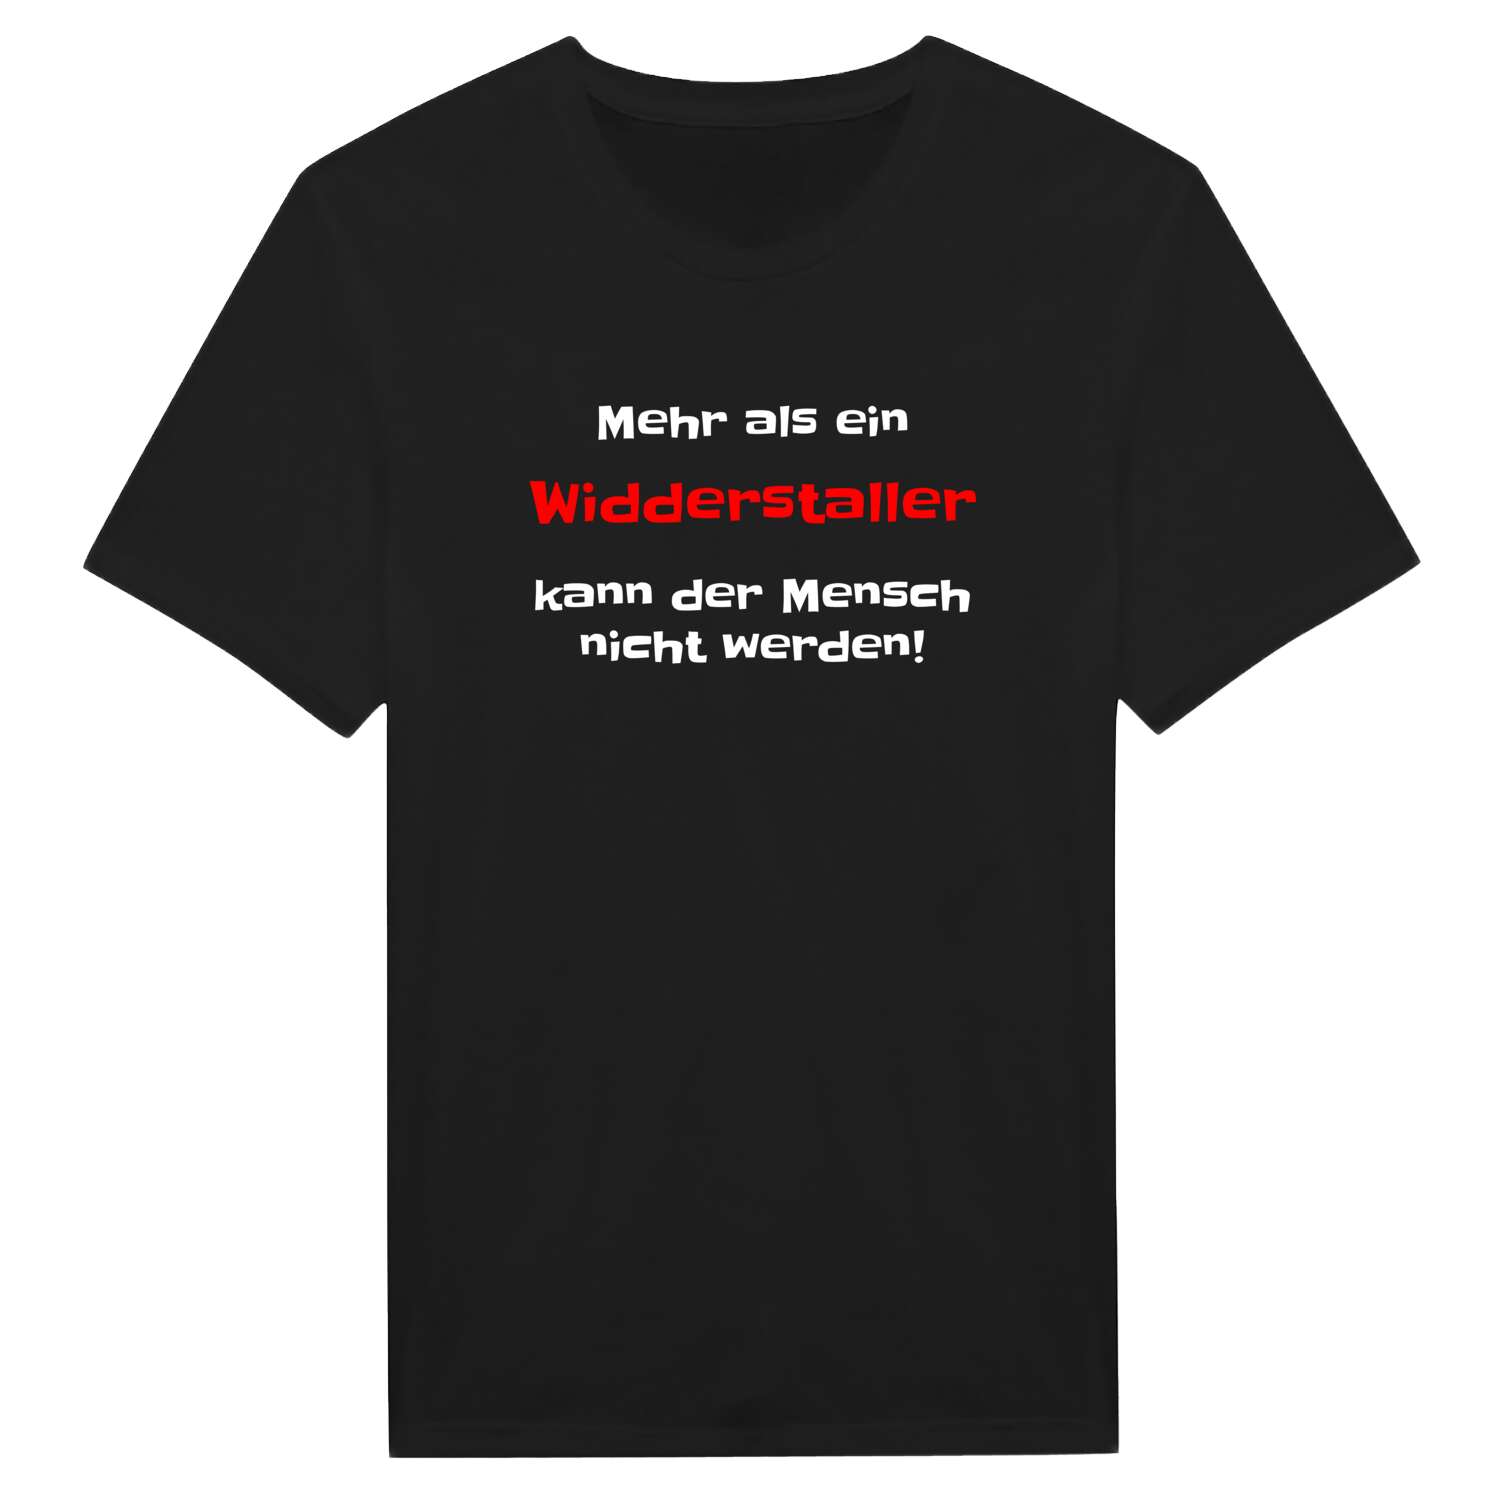 Widderstall T-Shirt »Mehr als ein«